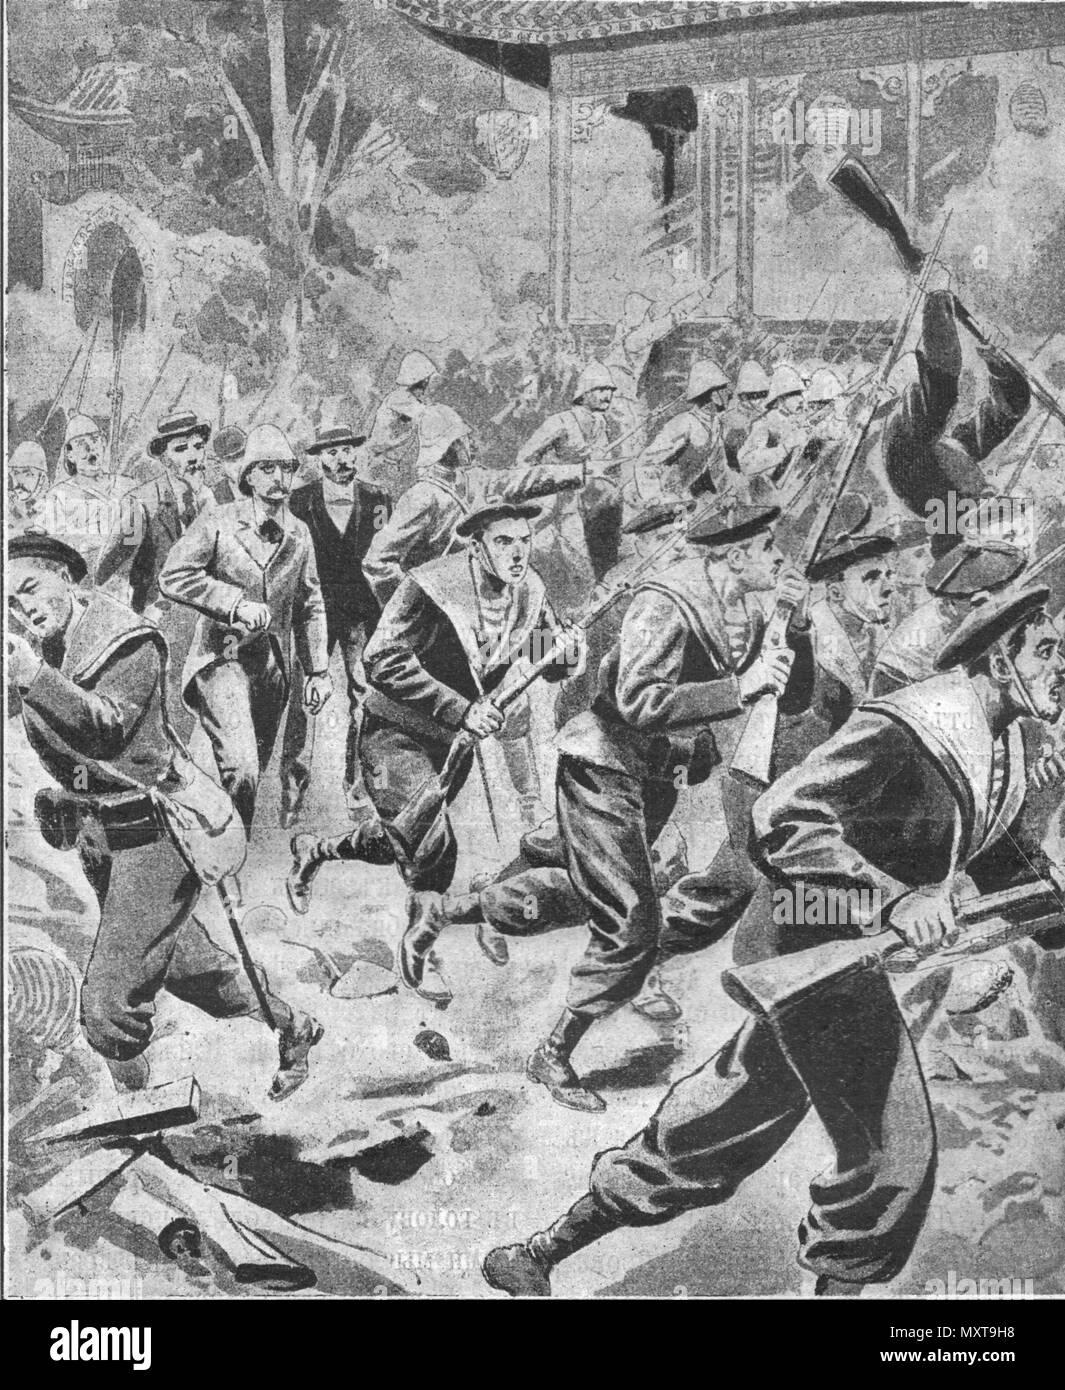 La Chine. La rébellion des boxeurs. Vintage engraved illustration. Publié dans la revue en 1900. Banque D'Images